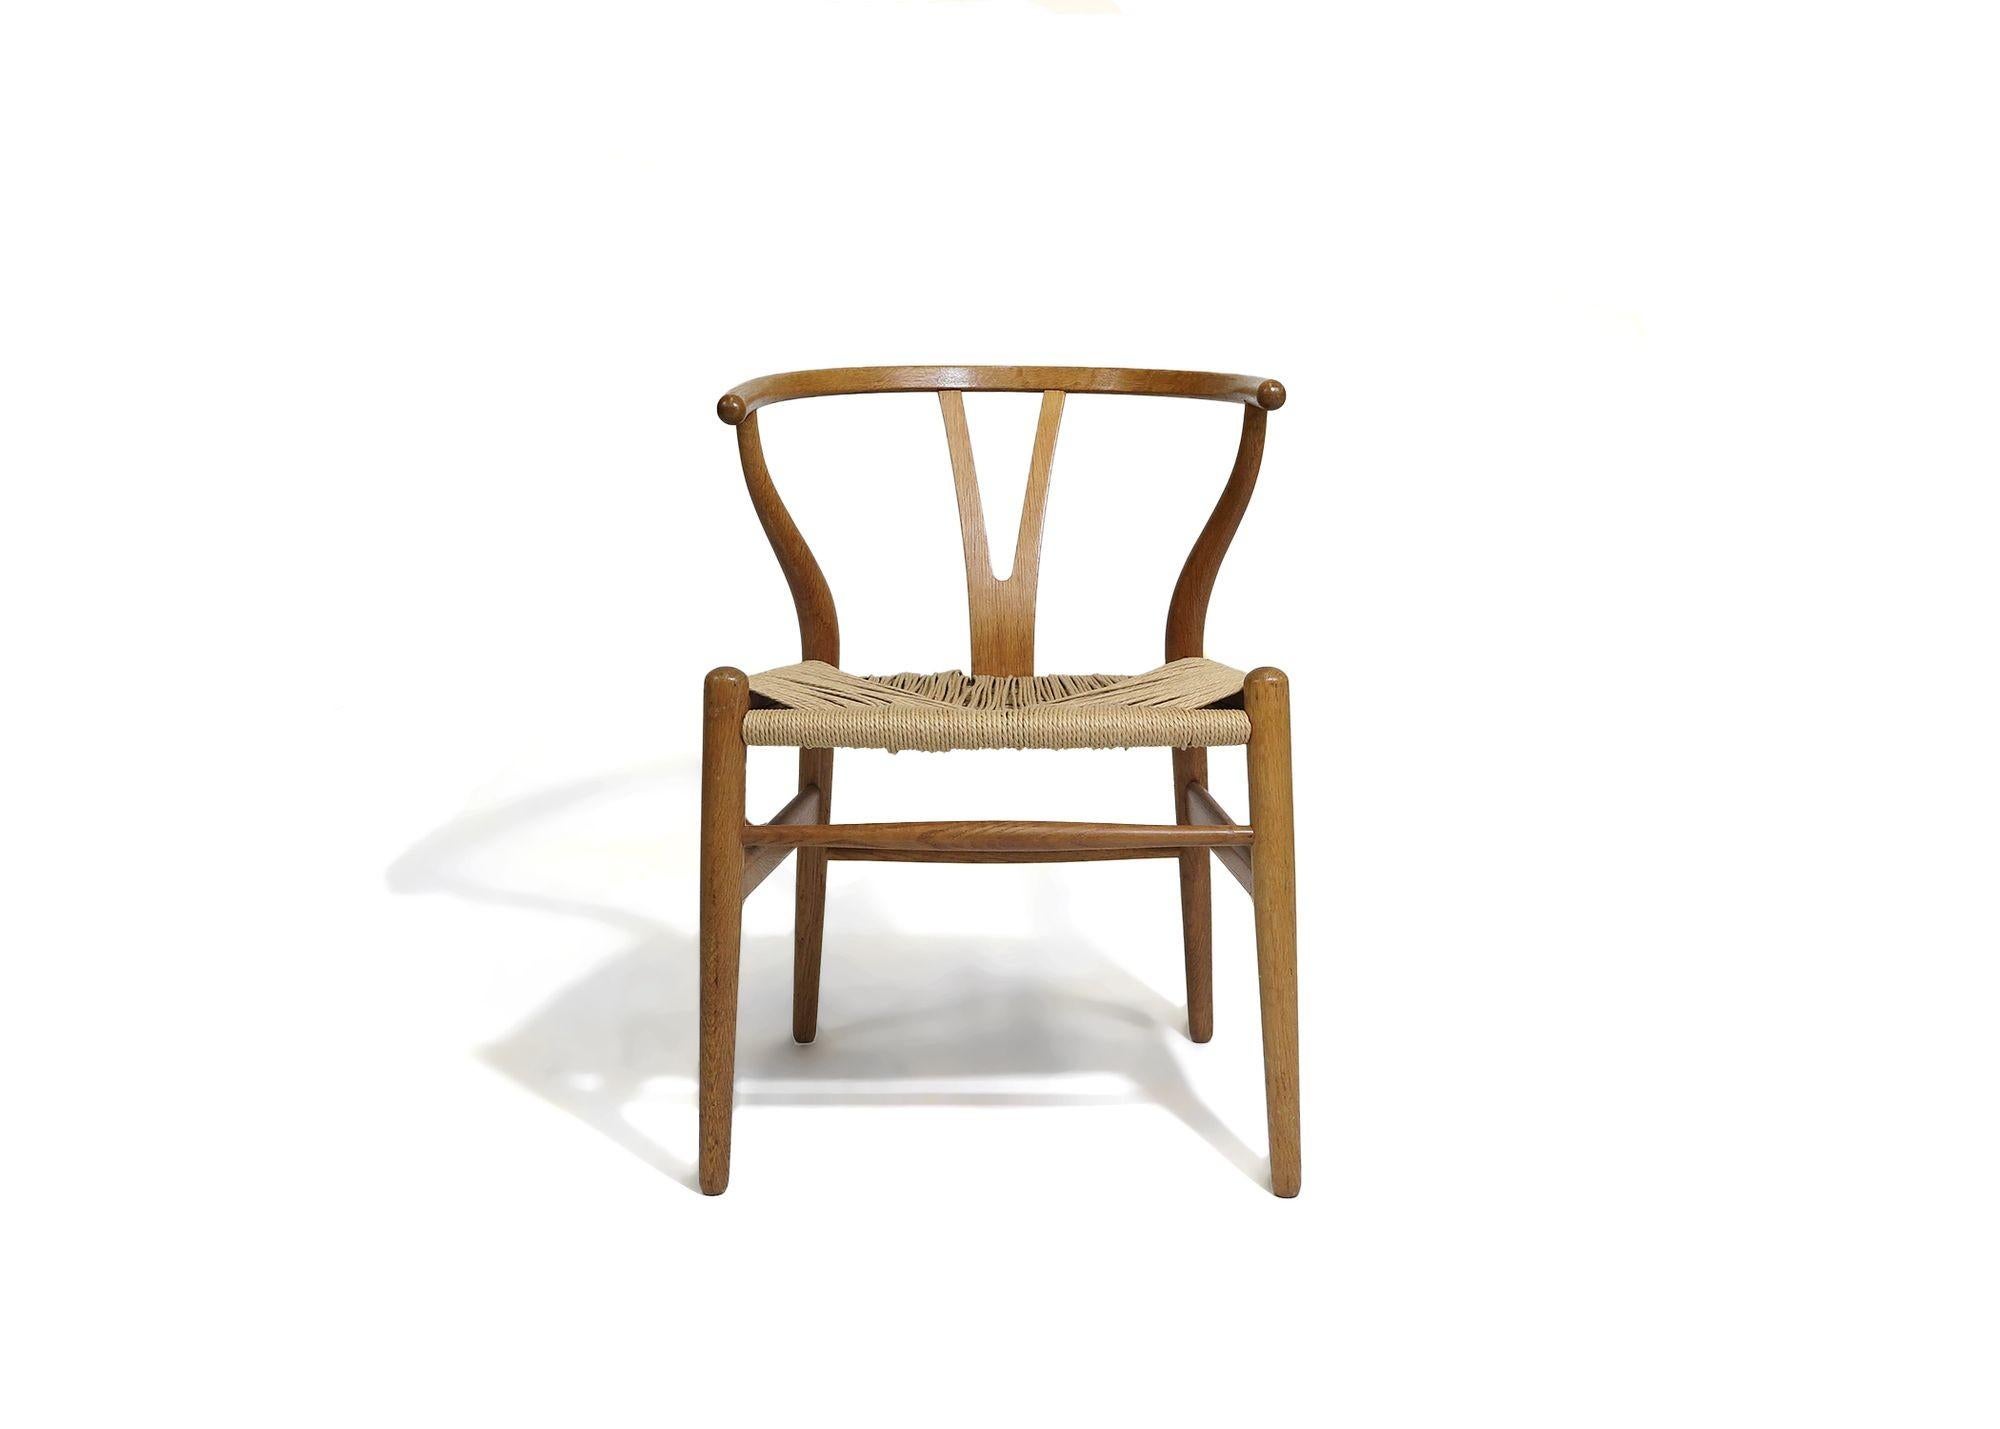 Paire de chaises de salle à manger authentiques Hans Wegner pour Carl Hansen CH24 en chêne blanc avec assise en corde de papier. Estampillé.
Dimensions L 20.50'' x P 20.25'' x H 28.75''
Hauteur du siège 16.75''